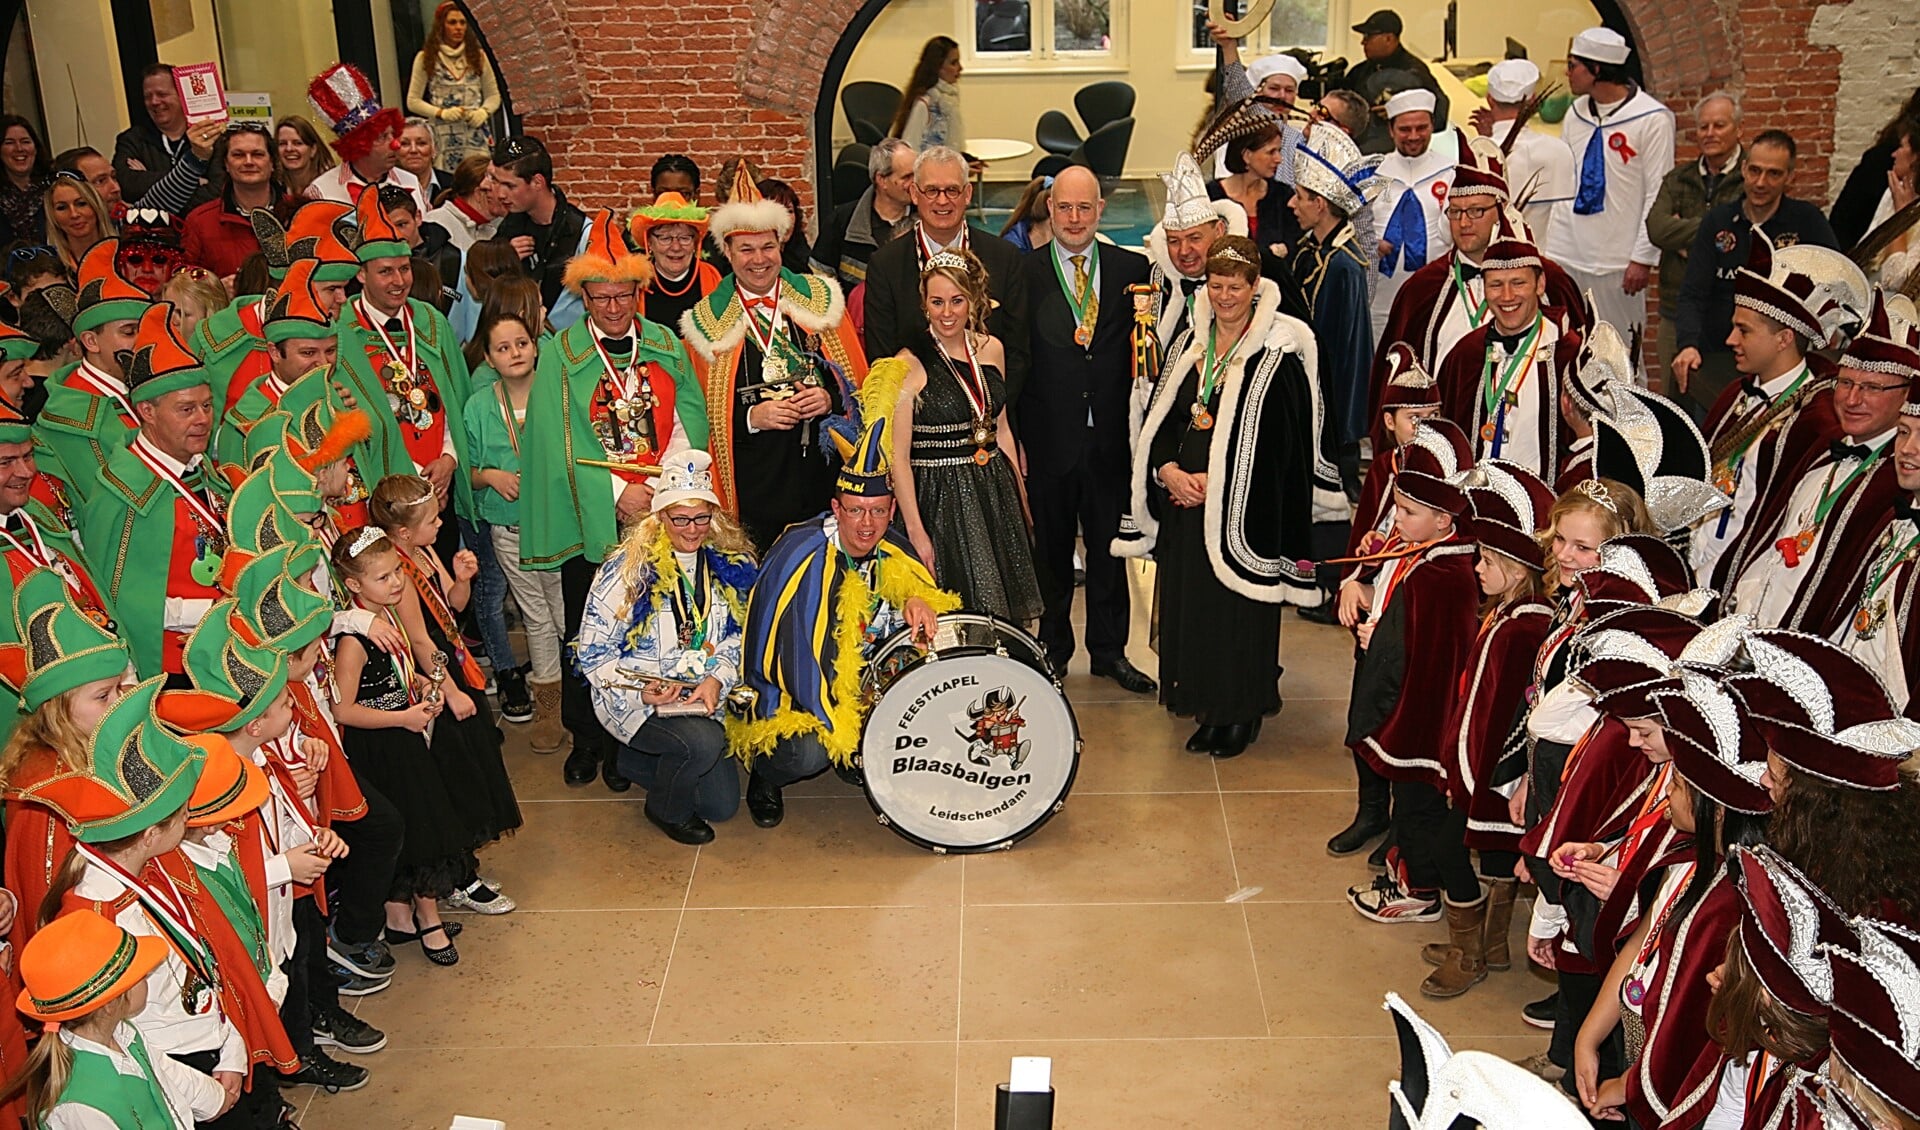 De ontvangst van de carnavalsvierders uit Leidschendam en Stompwijk in het gemeentehuis in Leidschendam (foto: Alex van Vliet).